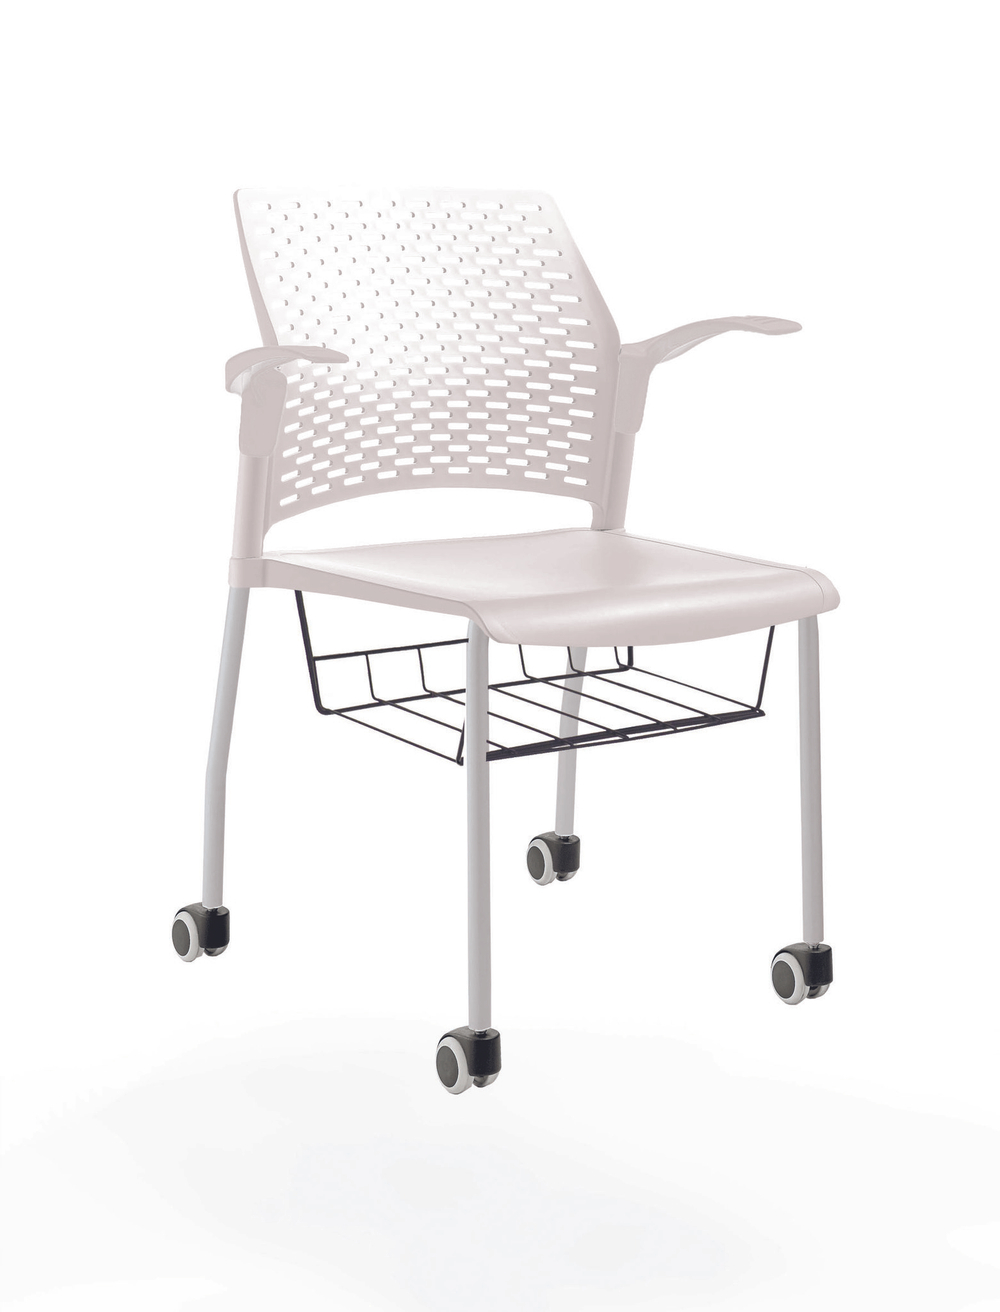 стул Rewind на 4 ногах и колесах, каркас серый, пластик белый, с открытыми подлокотниками, с подседельной корзиной, сиденье и спинка без обивки